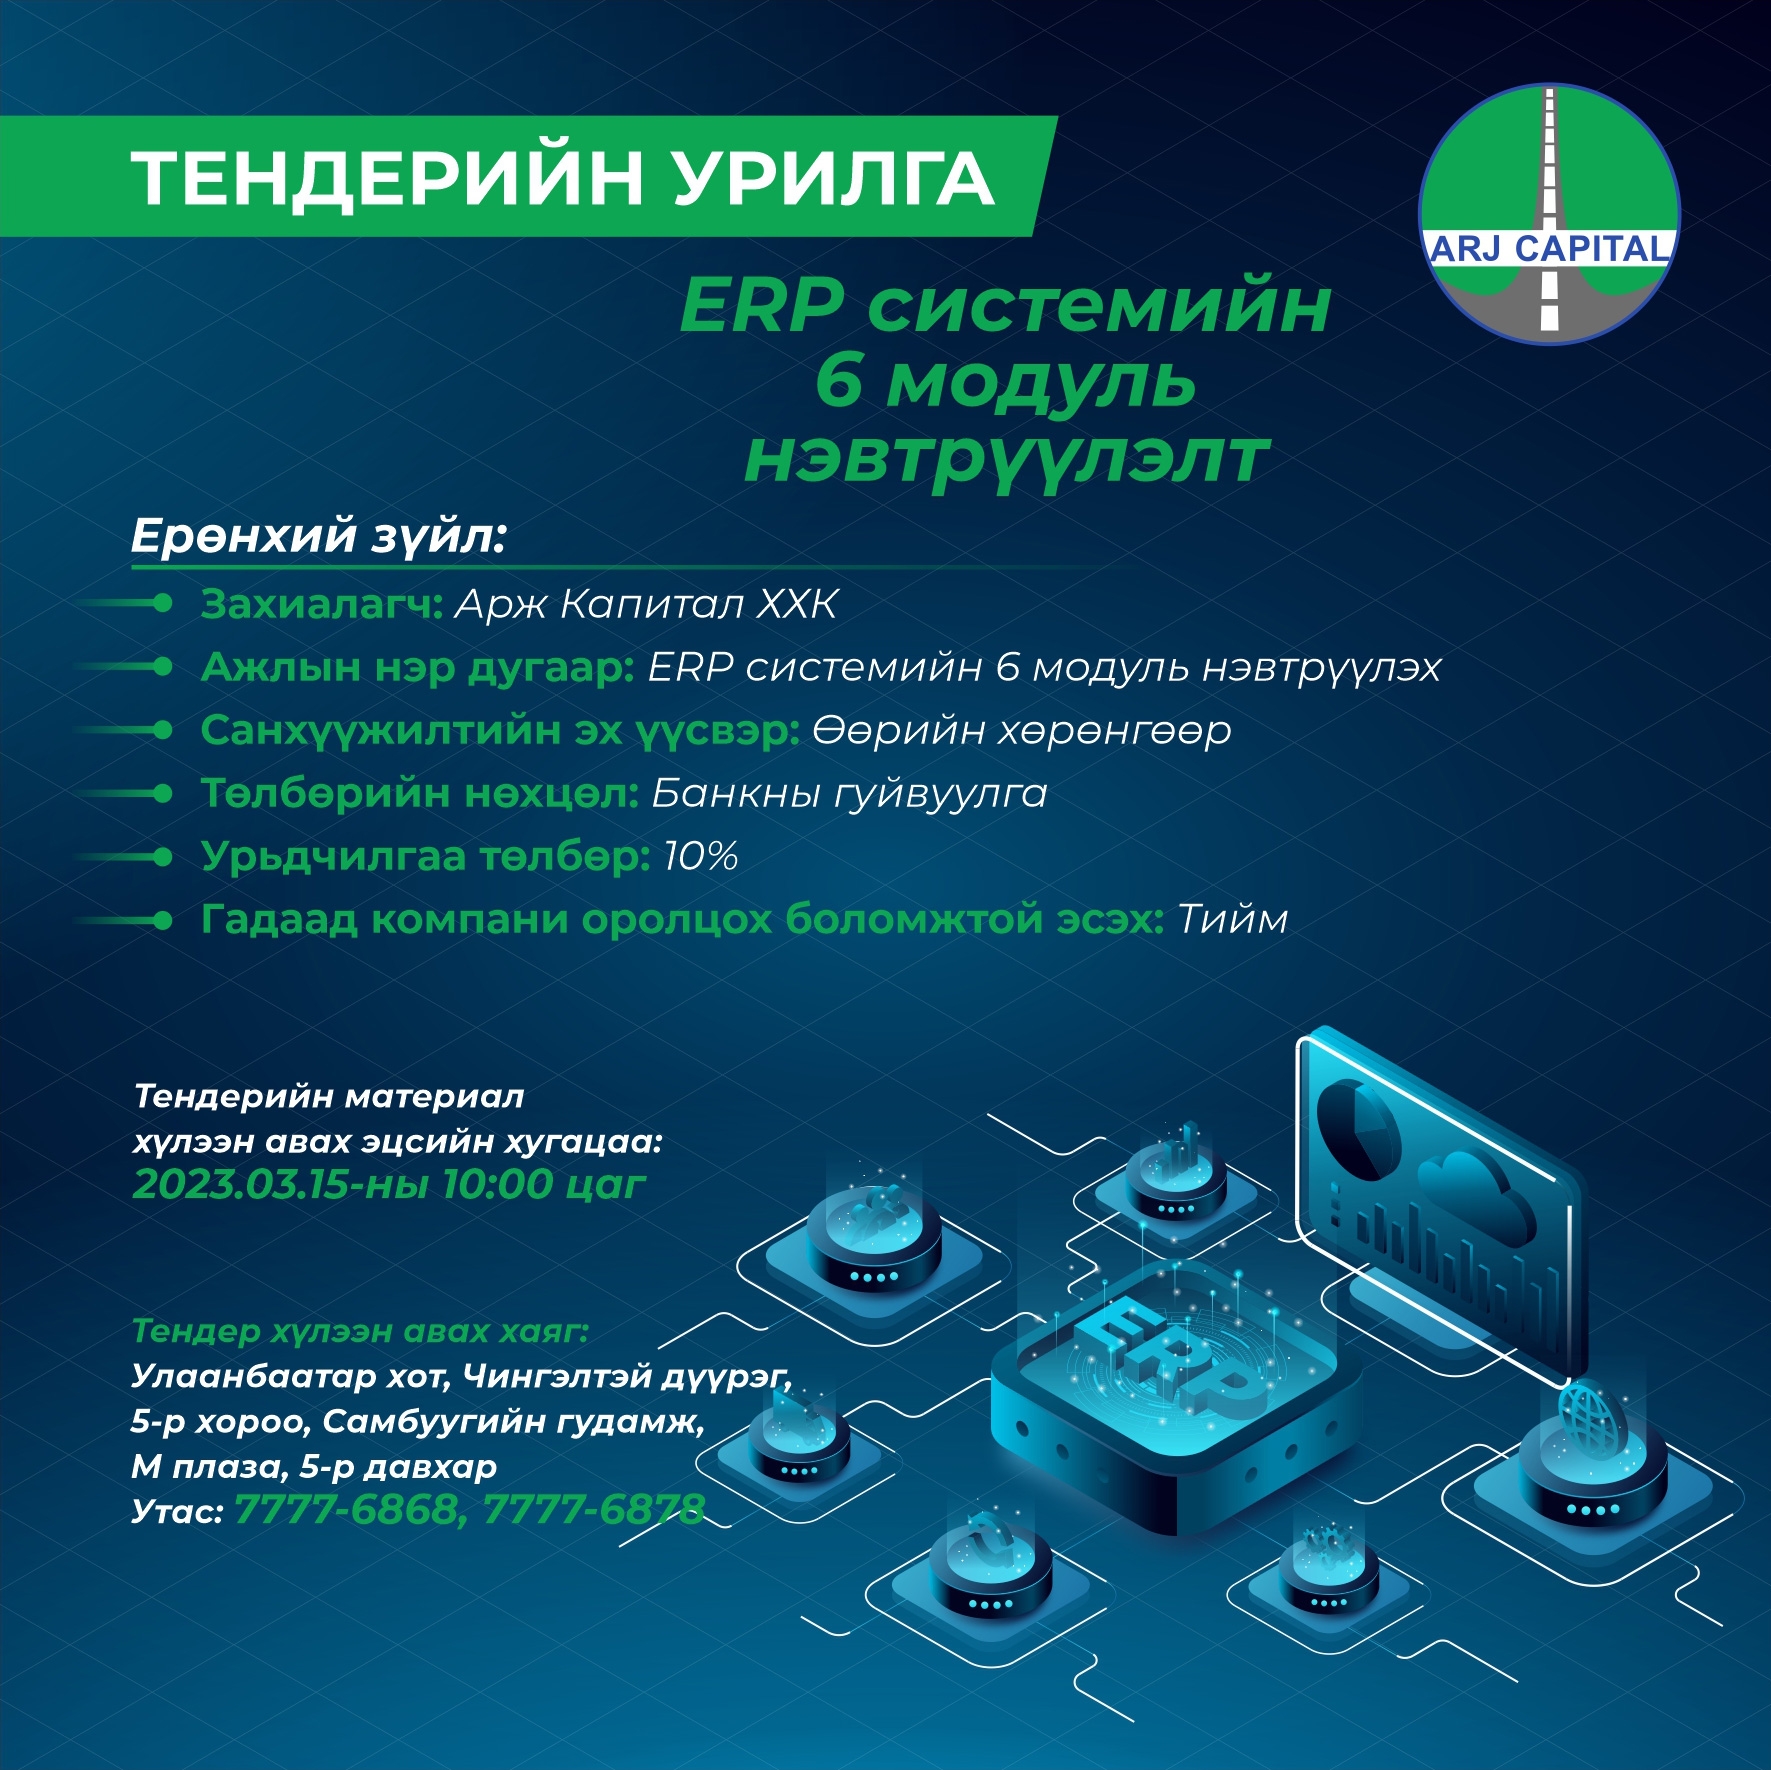 ERP системийн 6 модуль нэвтрүүлэлт